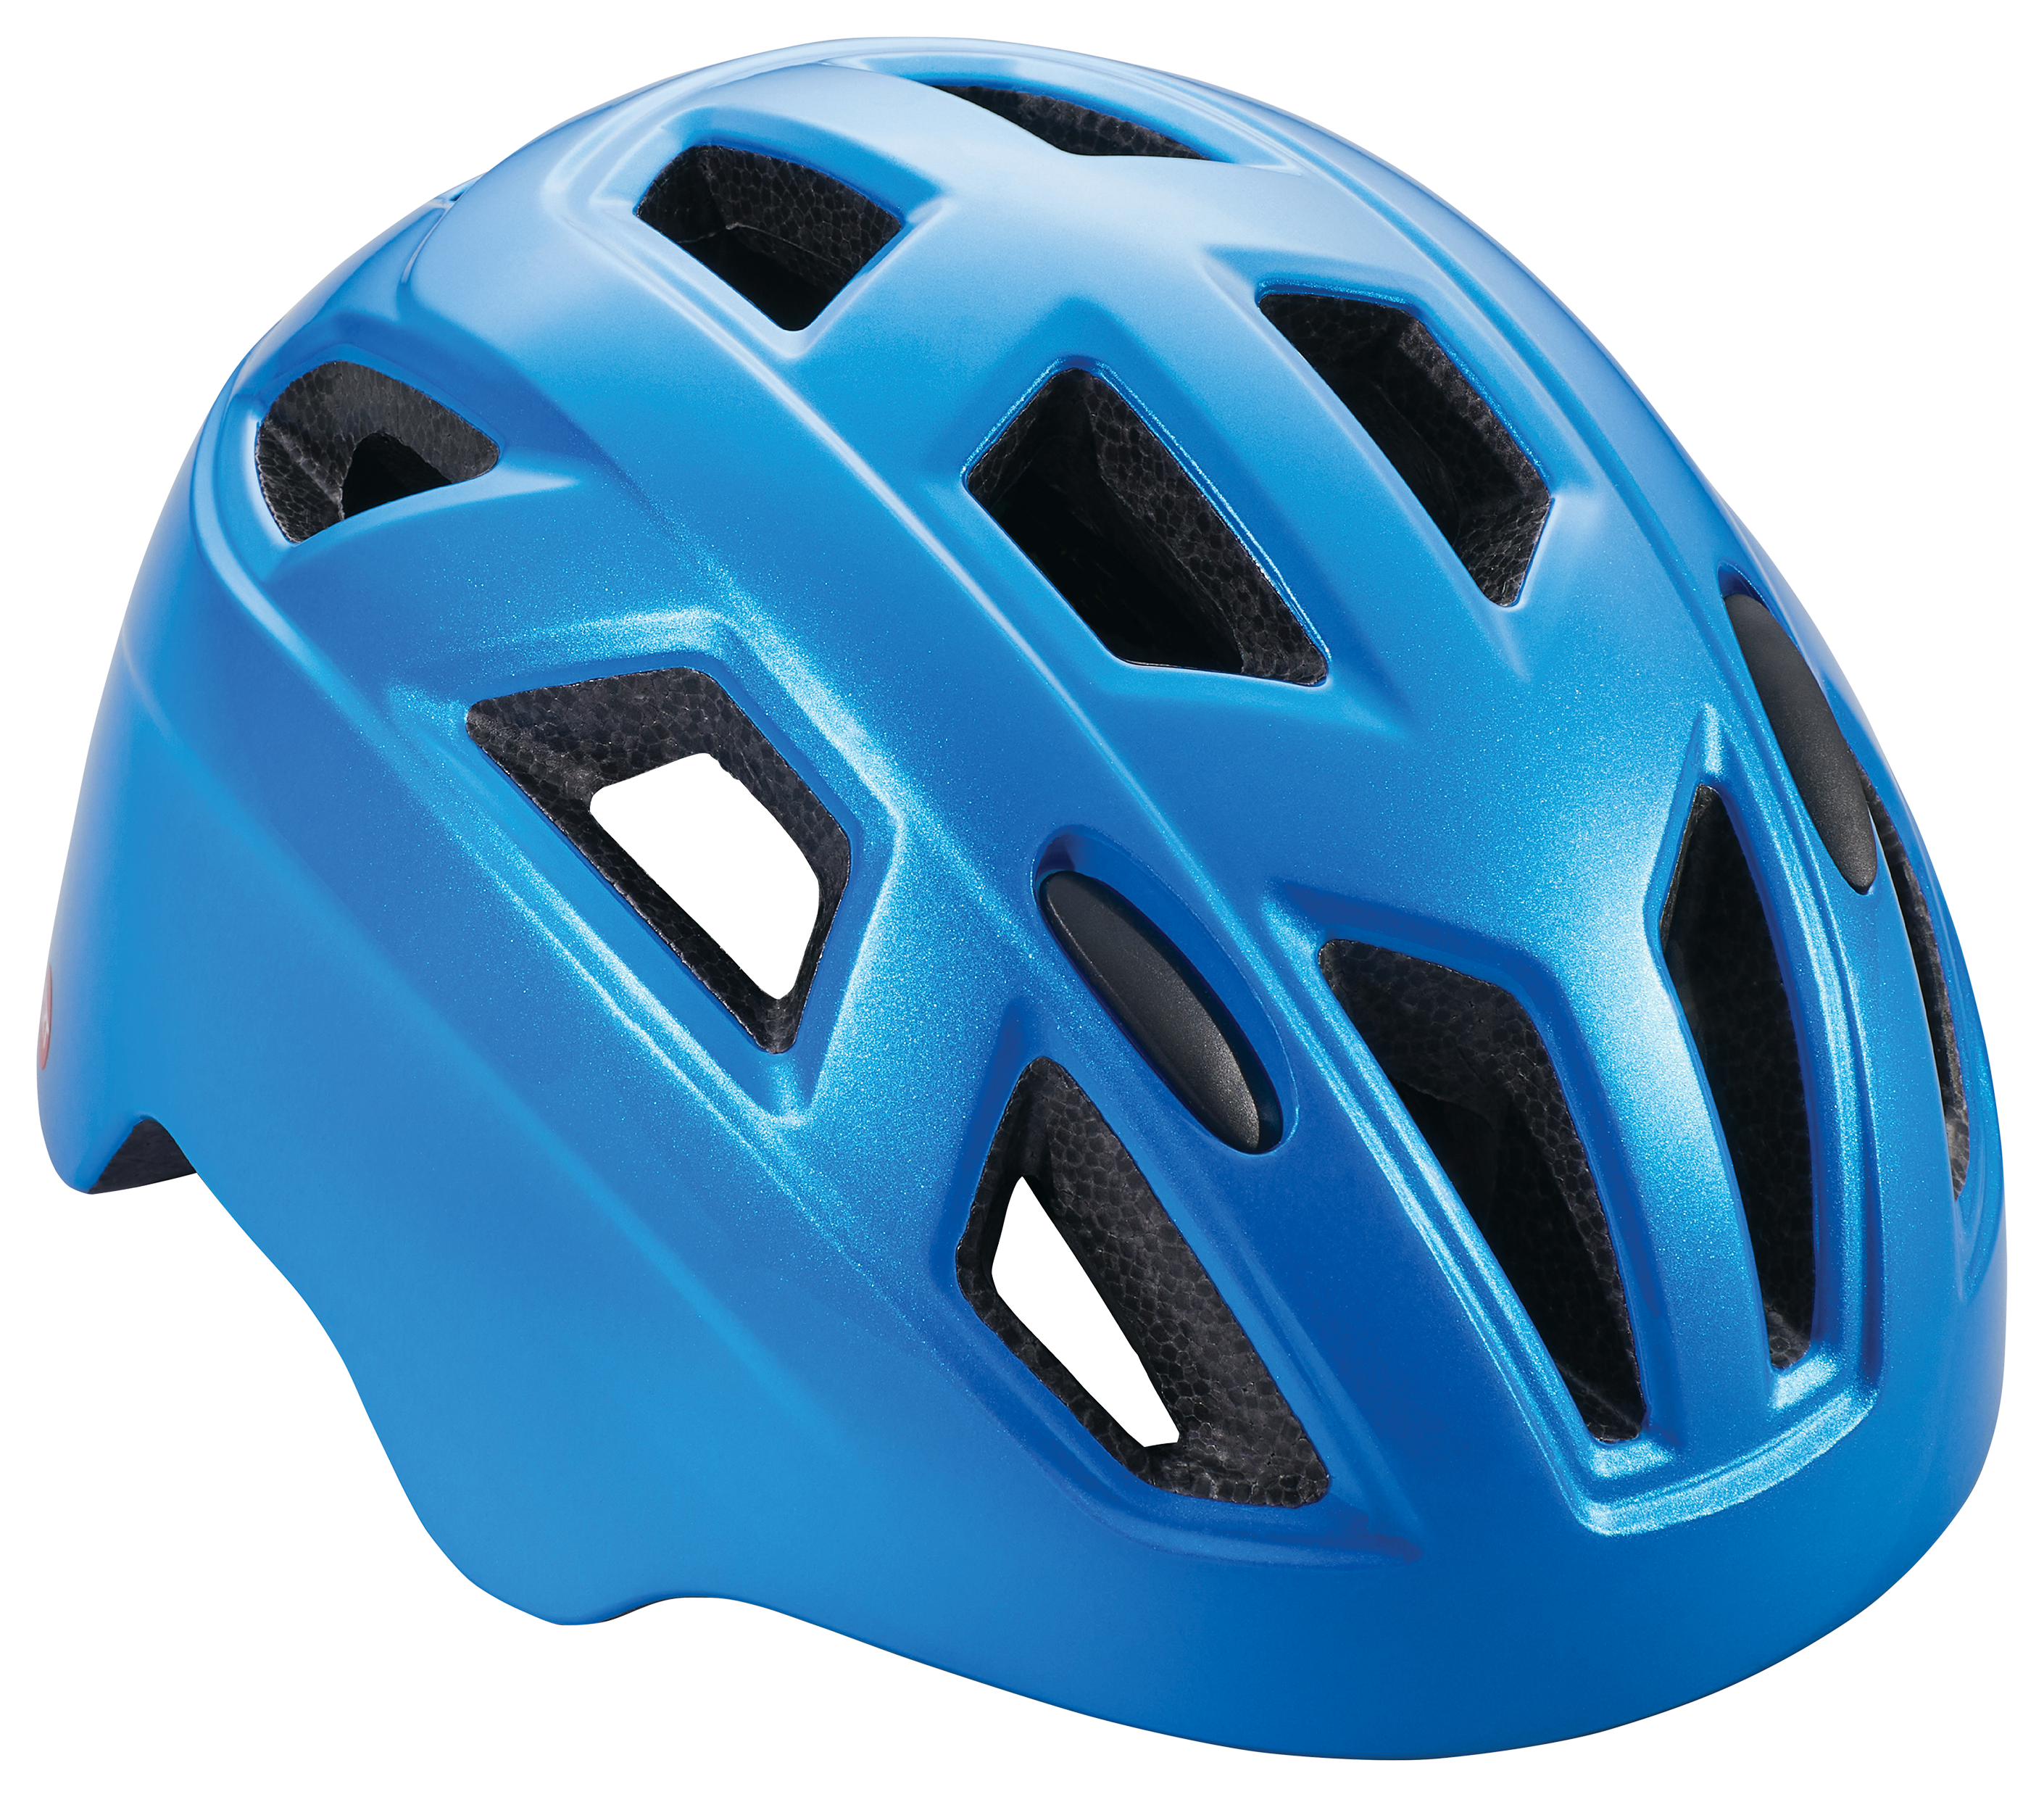 Schwinn Chroma ERT Bike Helmet for Kids